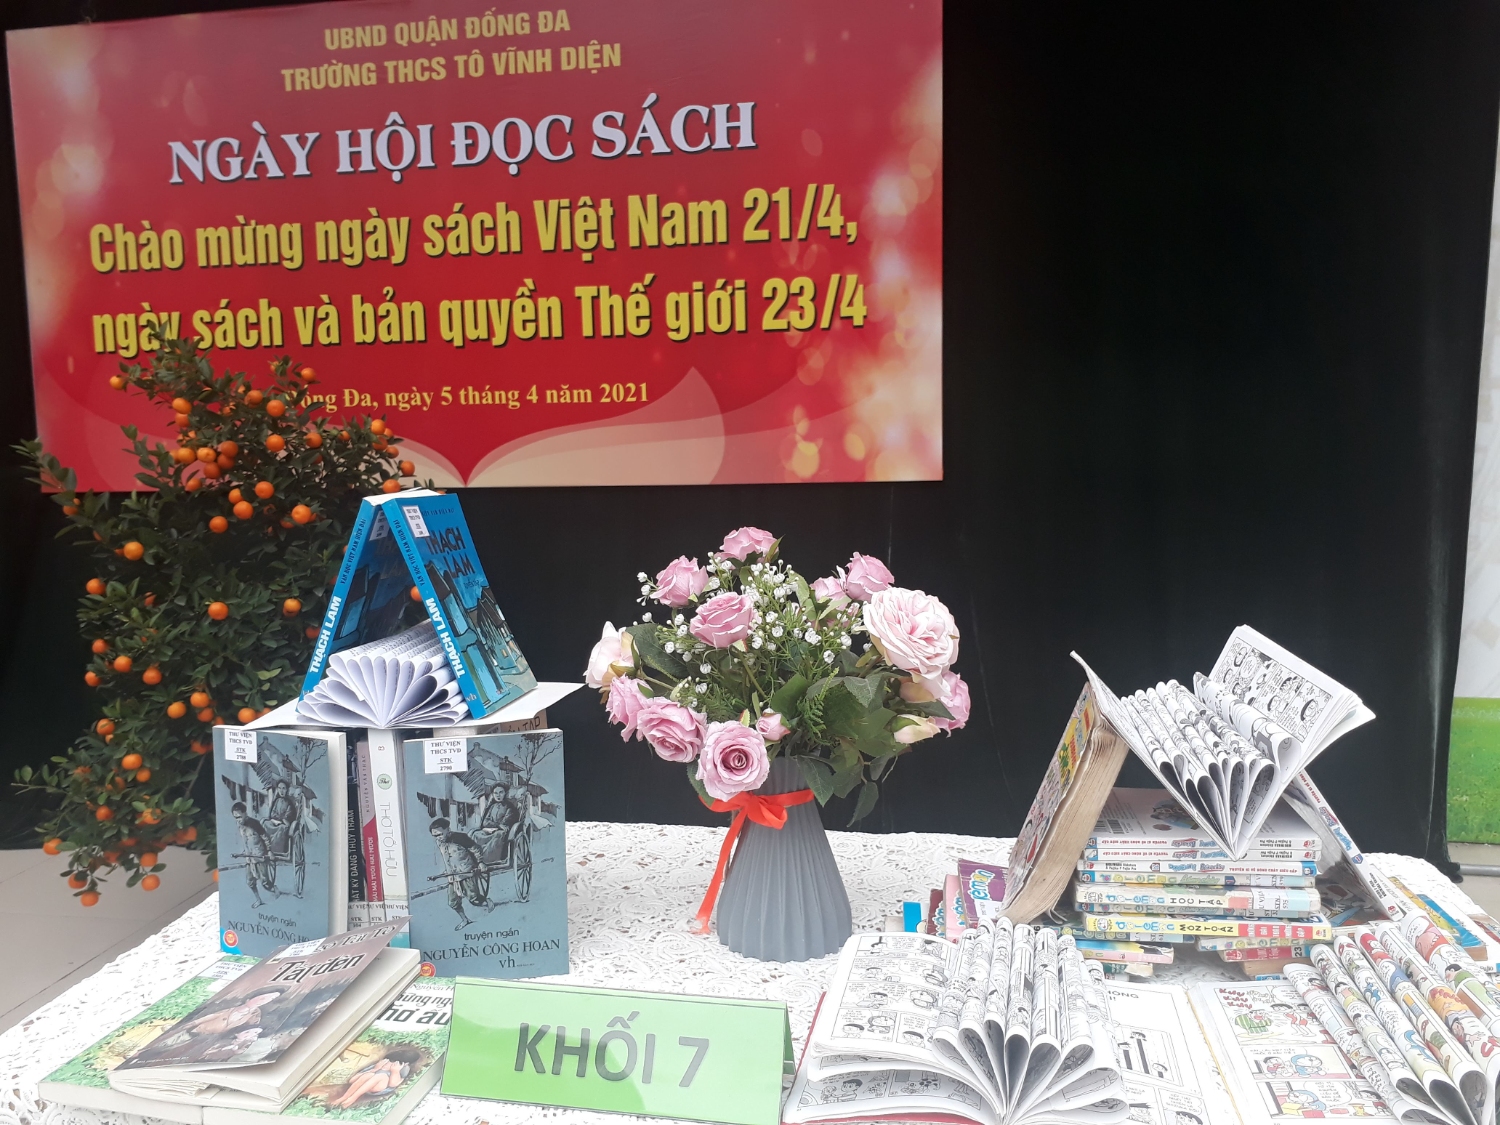 THCS Tô Vĩnh Diện - Chào mừng ngày sách Việt Nam 21.04.2021